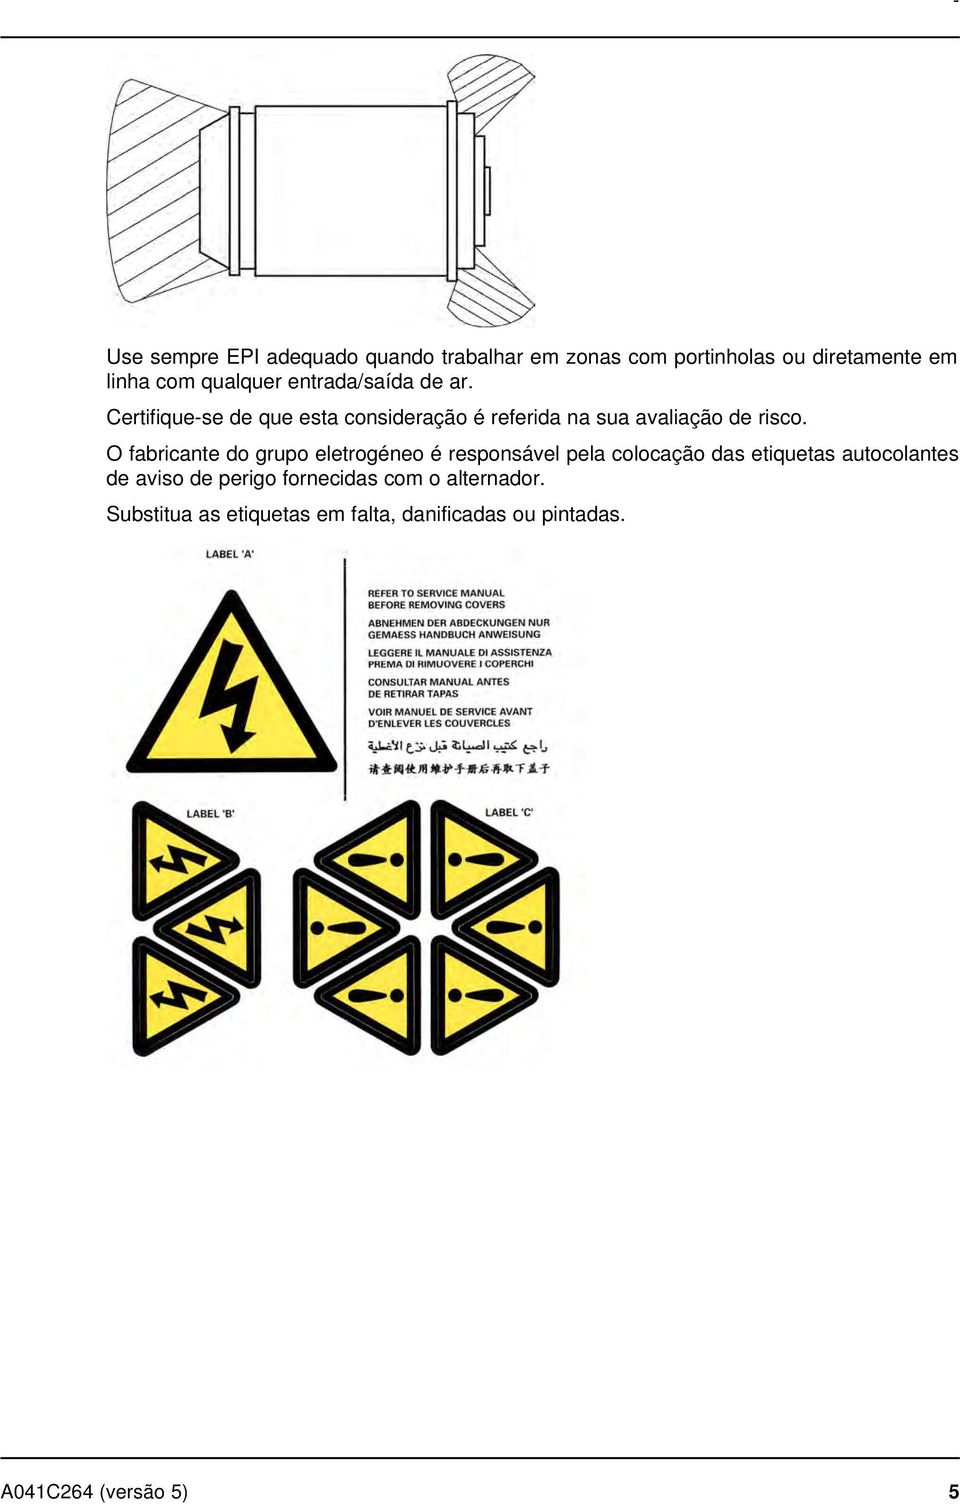 O fabricante do grupo eletrogéneo é responsável pela colocação das etiquetas autocolantes de aviso de